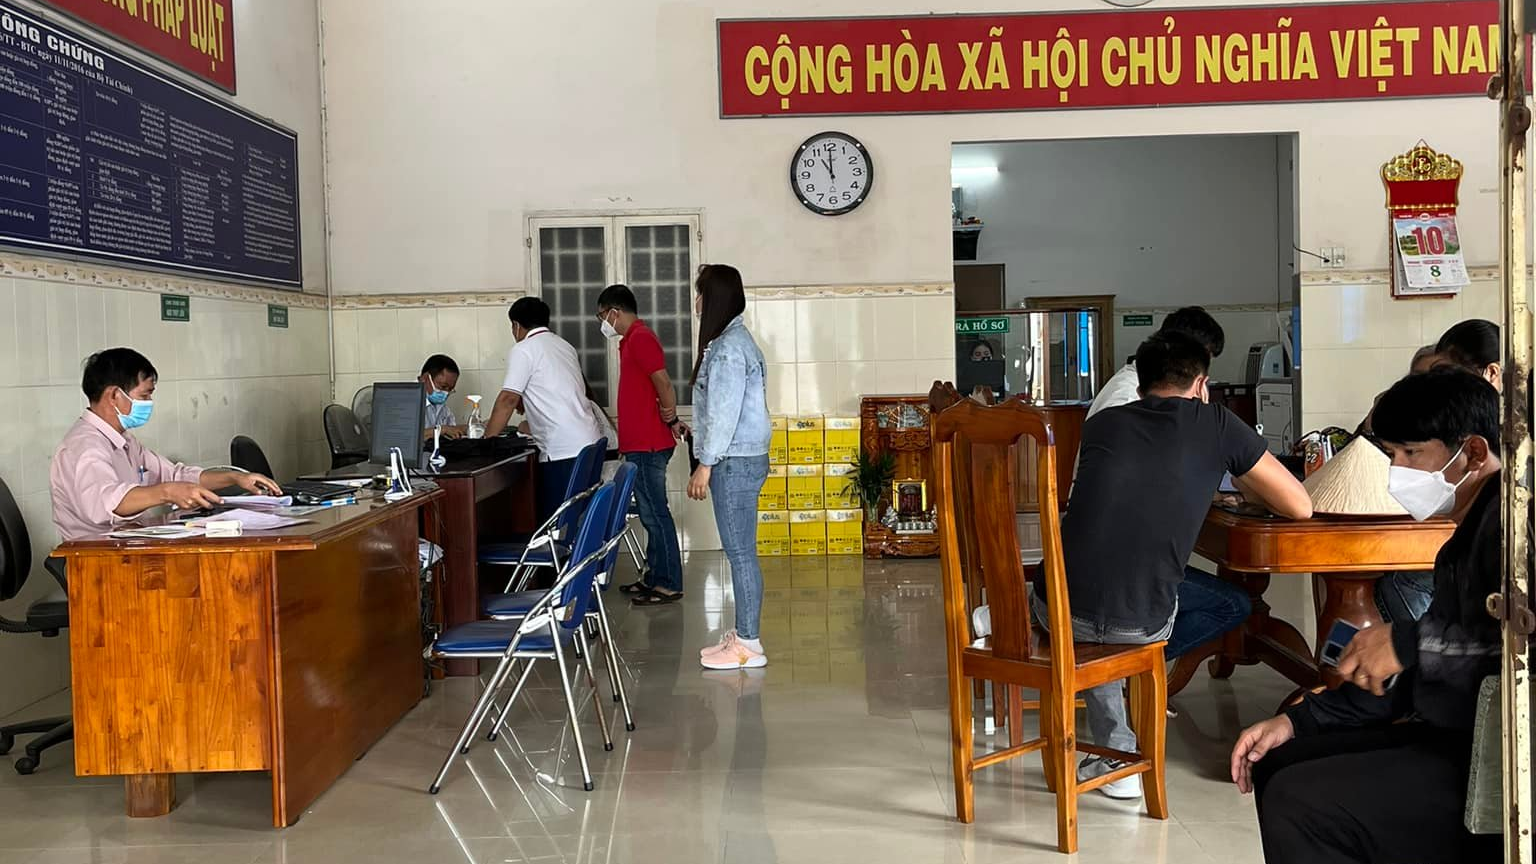 Liên hệ Văn phòng công chứng Cửu Long Tiền Giang thông tin địa chỉ số điện thoại